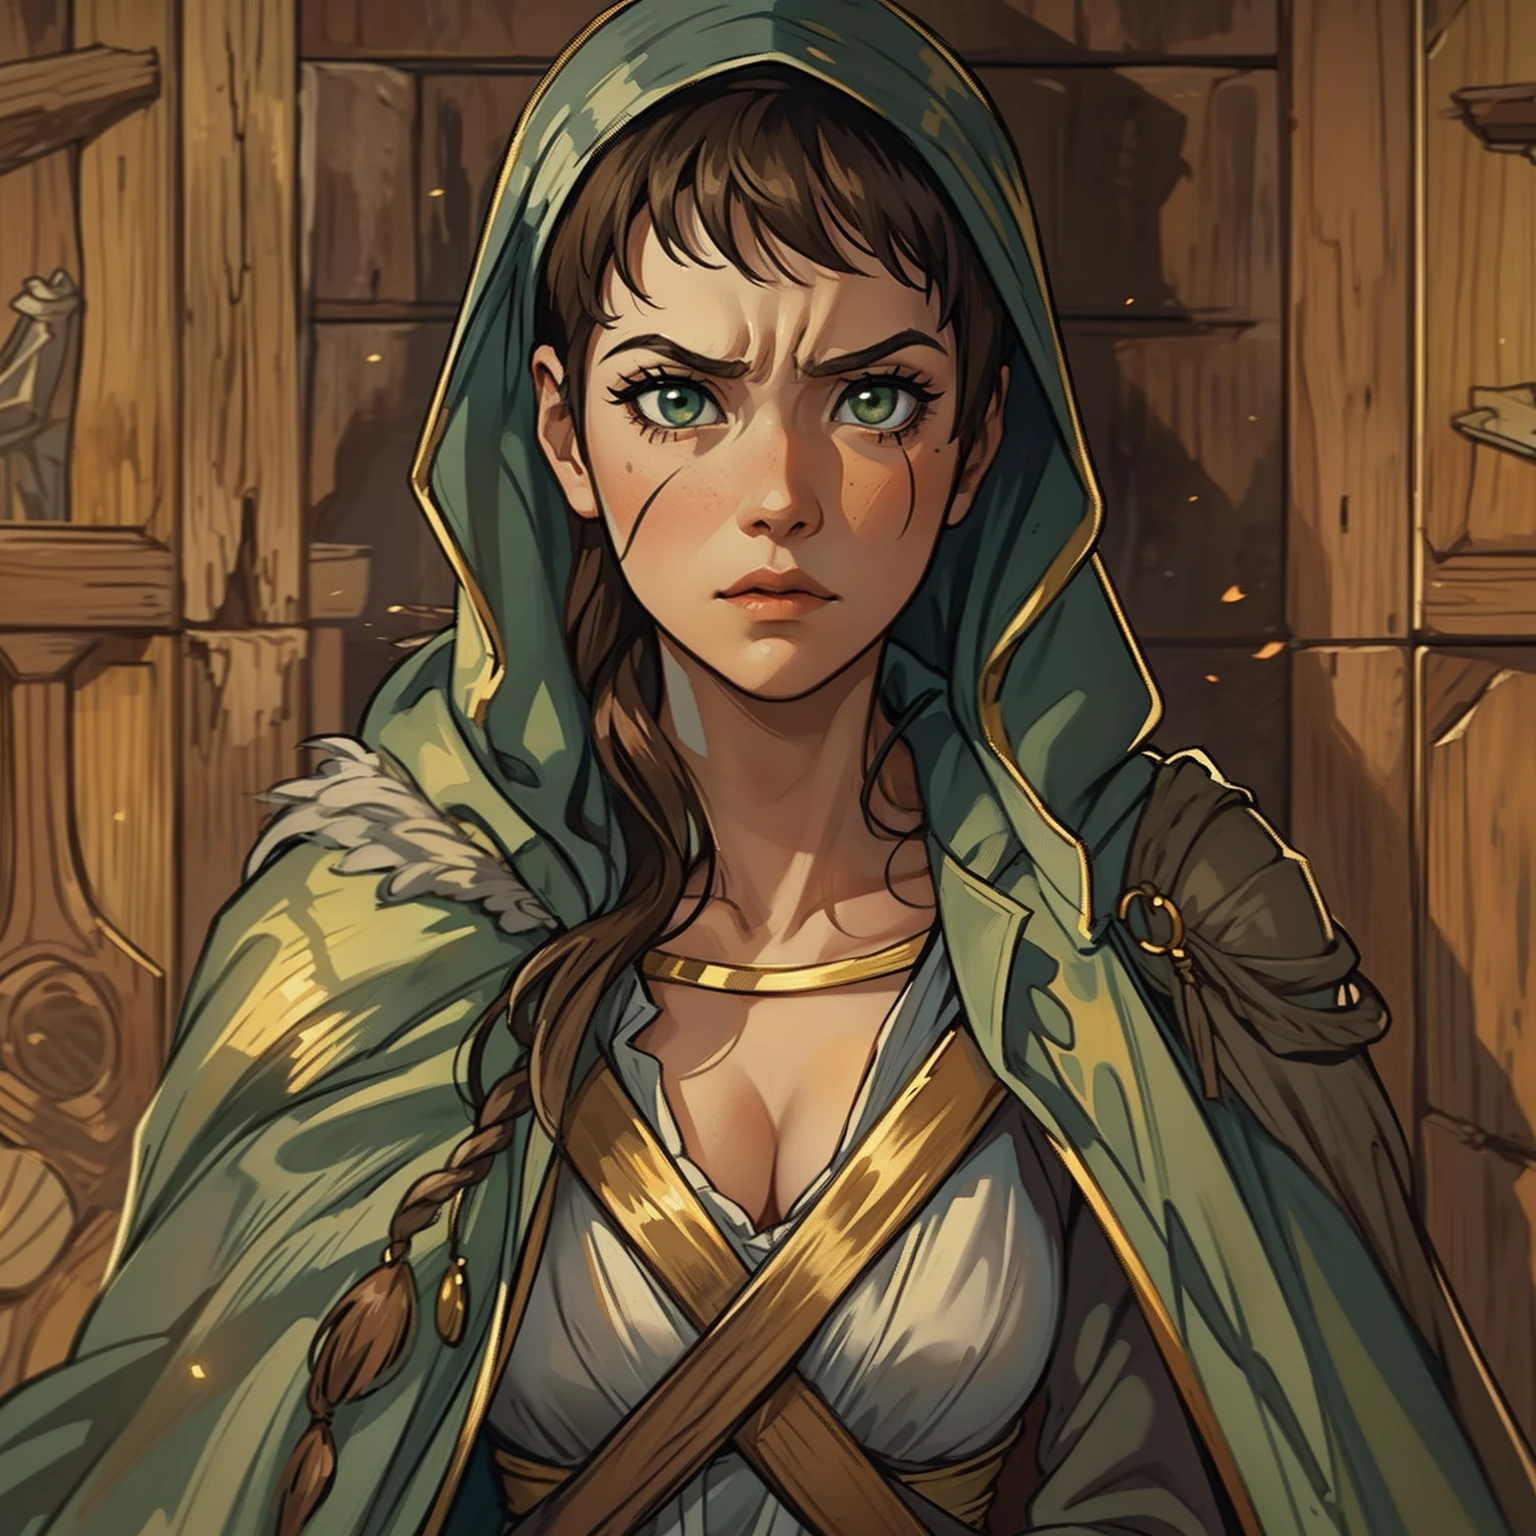 Une belle femme aux yeux verts et aux cheveux bruns est une sorcière Sorcière vêtue de robes blanches et dorées Robes nobles Une princesse de magie et un regard fatigué ((Hurlant furieusement)), est en caoutchouc. ((rougi)) papier peint en bois dramatique Un art pour un RPG Un art médiéval pour un RPG